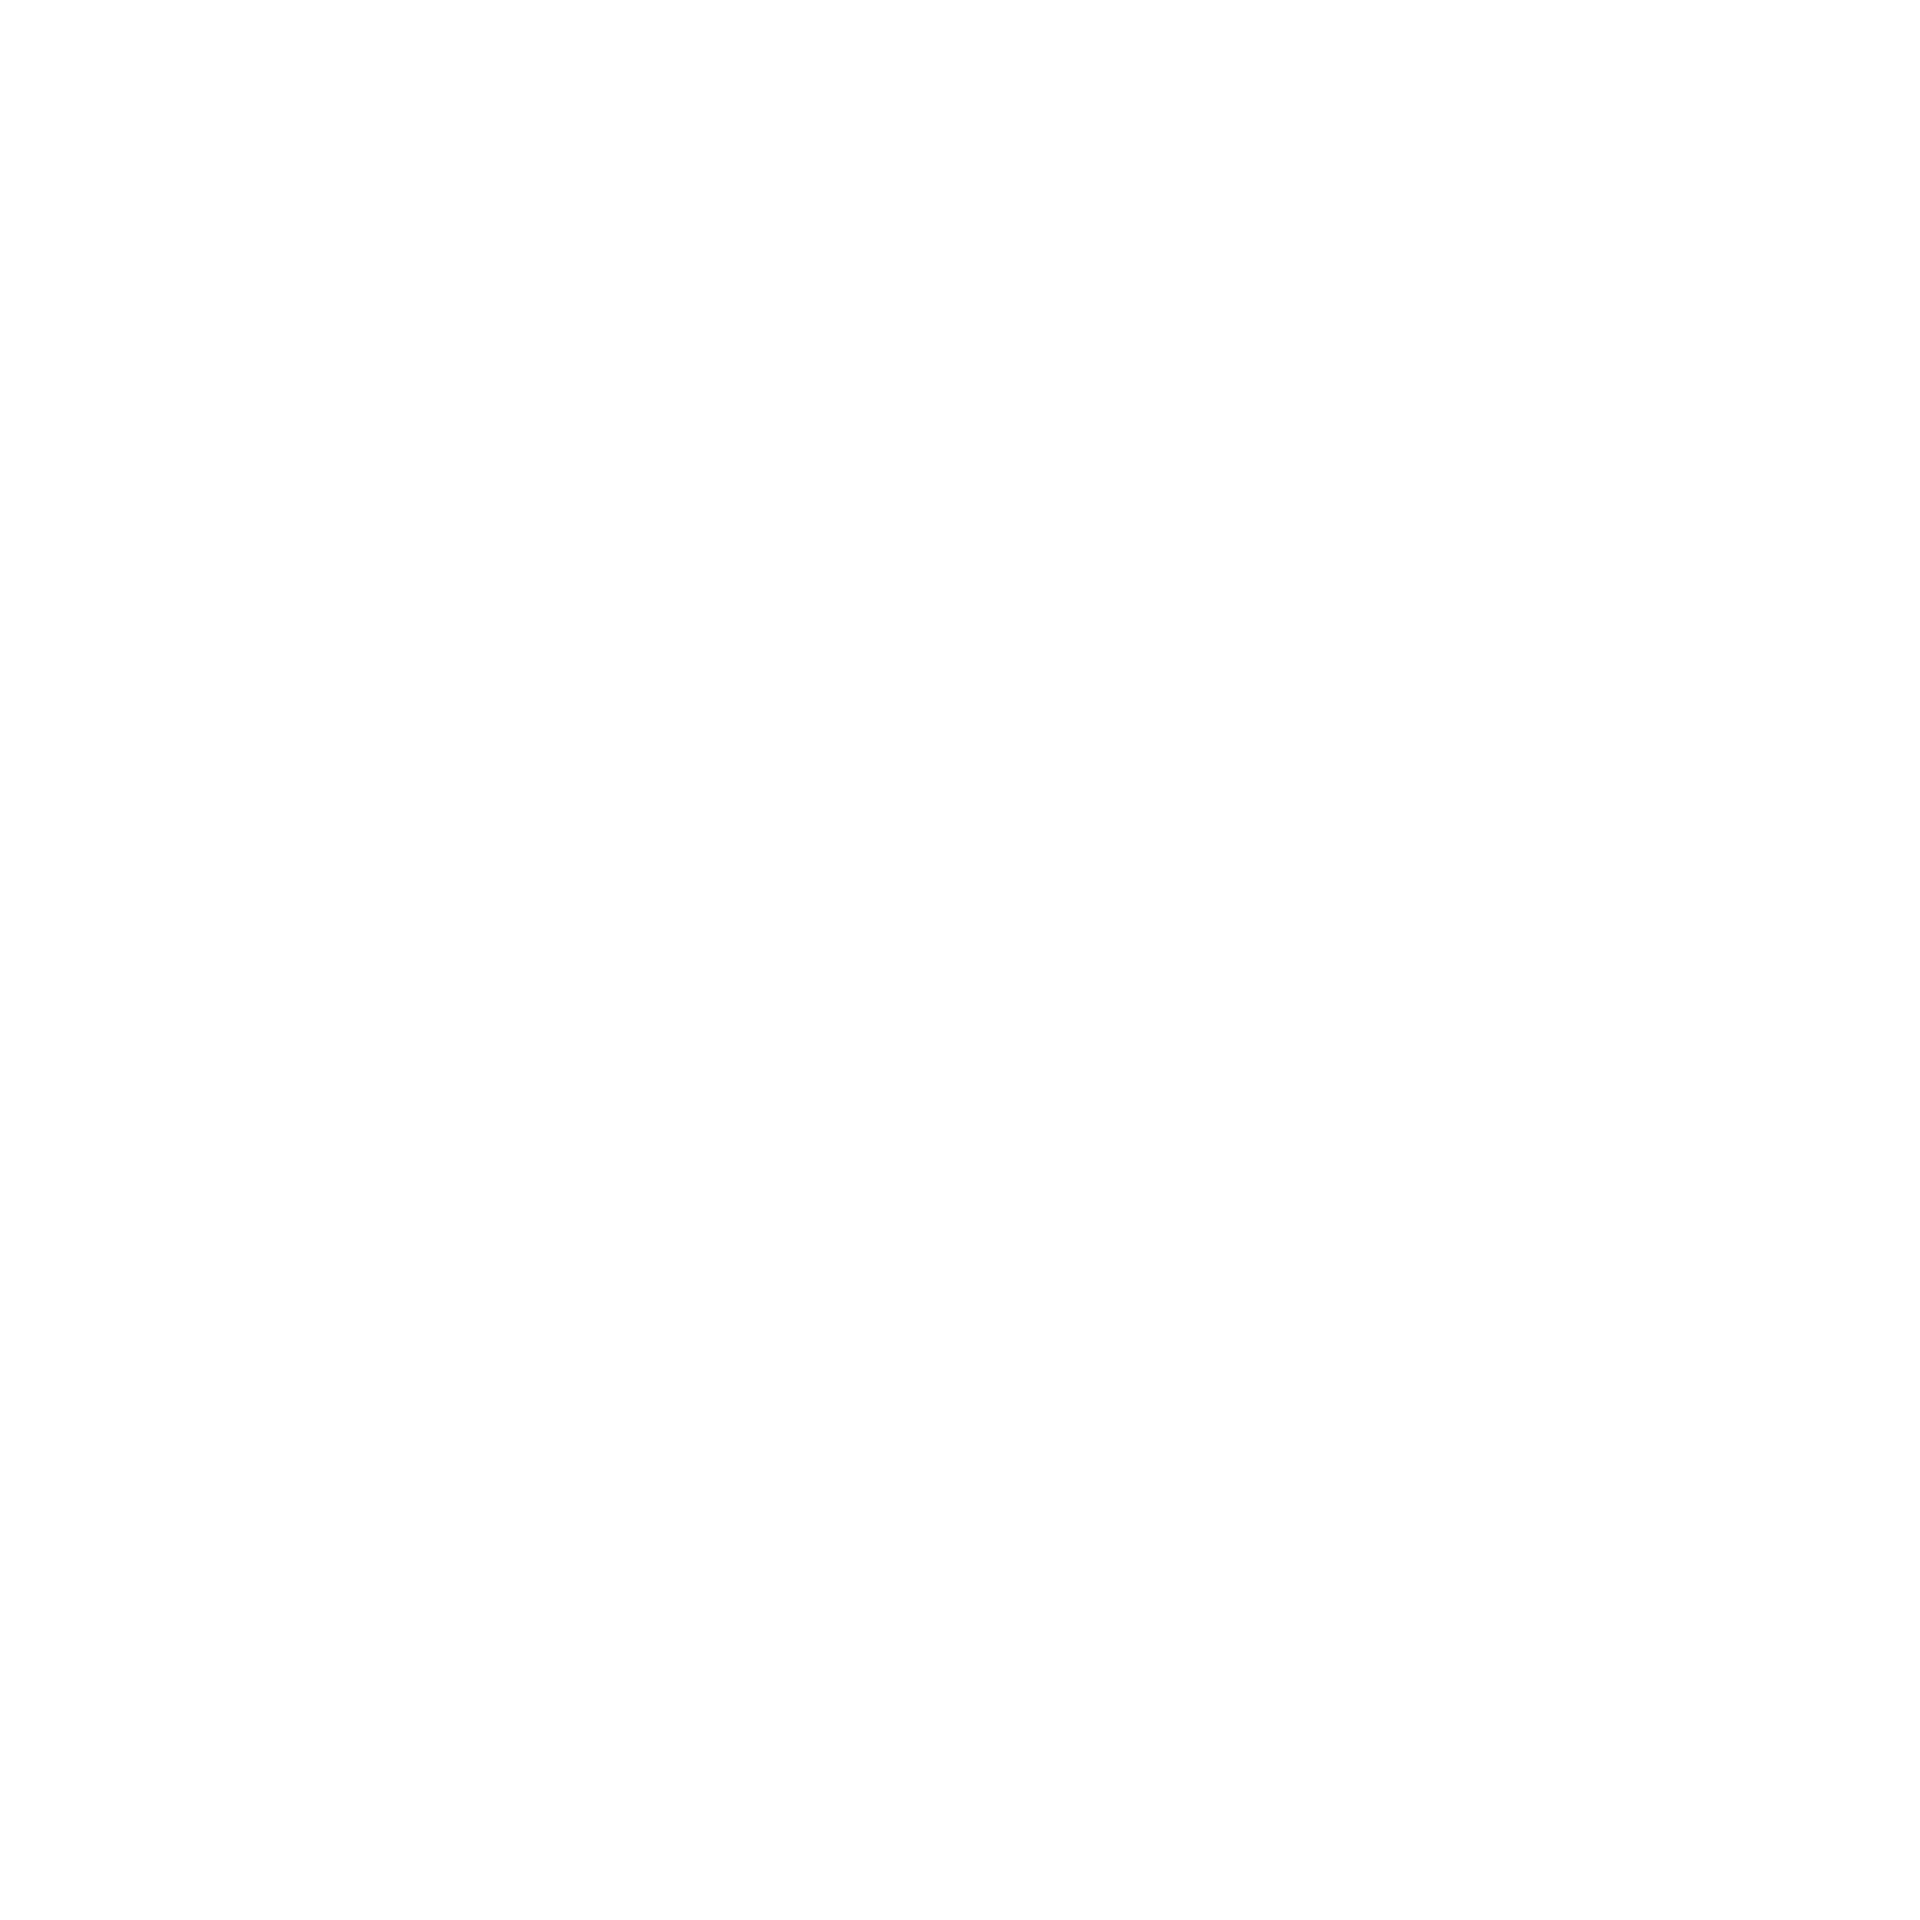 tatts hotel logo